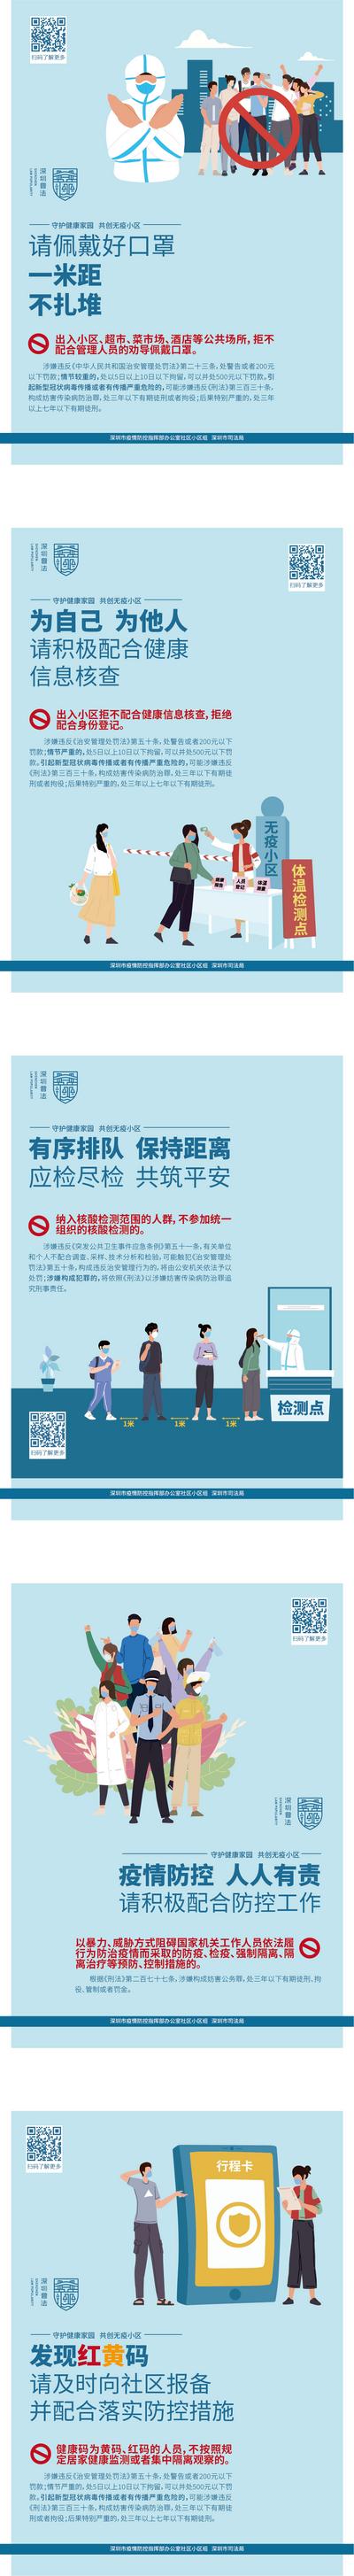 南门网 广告 海报 展板 公益 文明 城市 核心 价值观 围挡 示范 运动 城建 防疫 疫情 卫生 科普 宣传